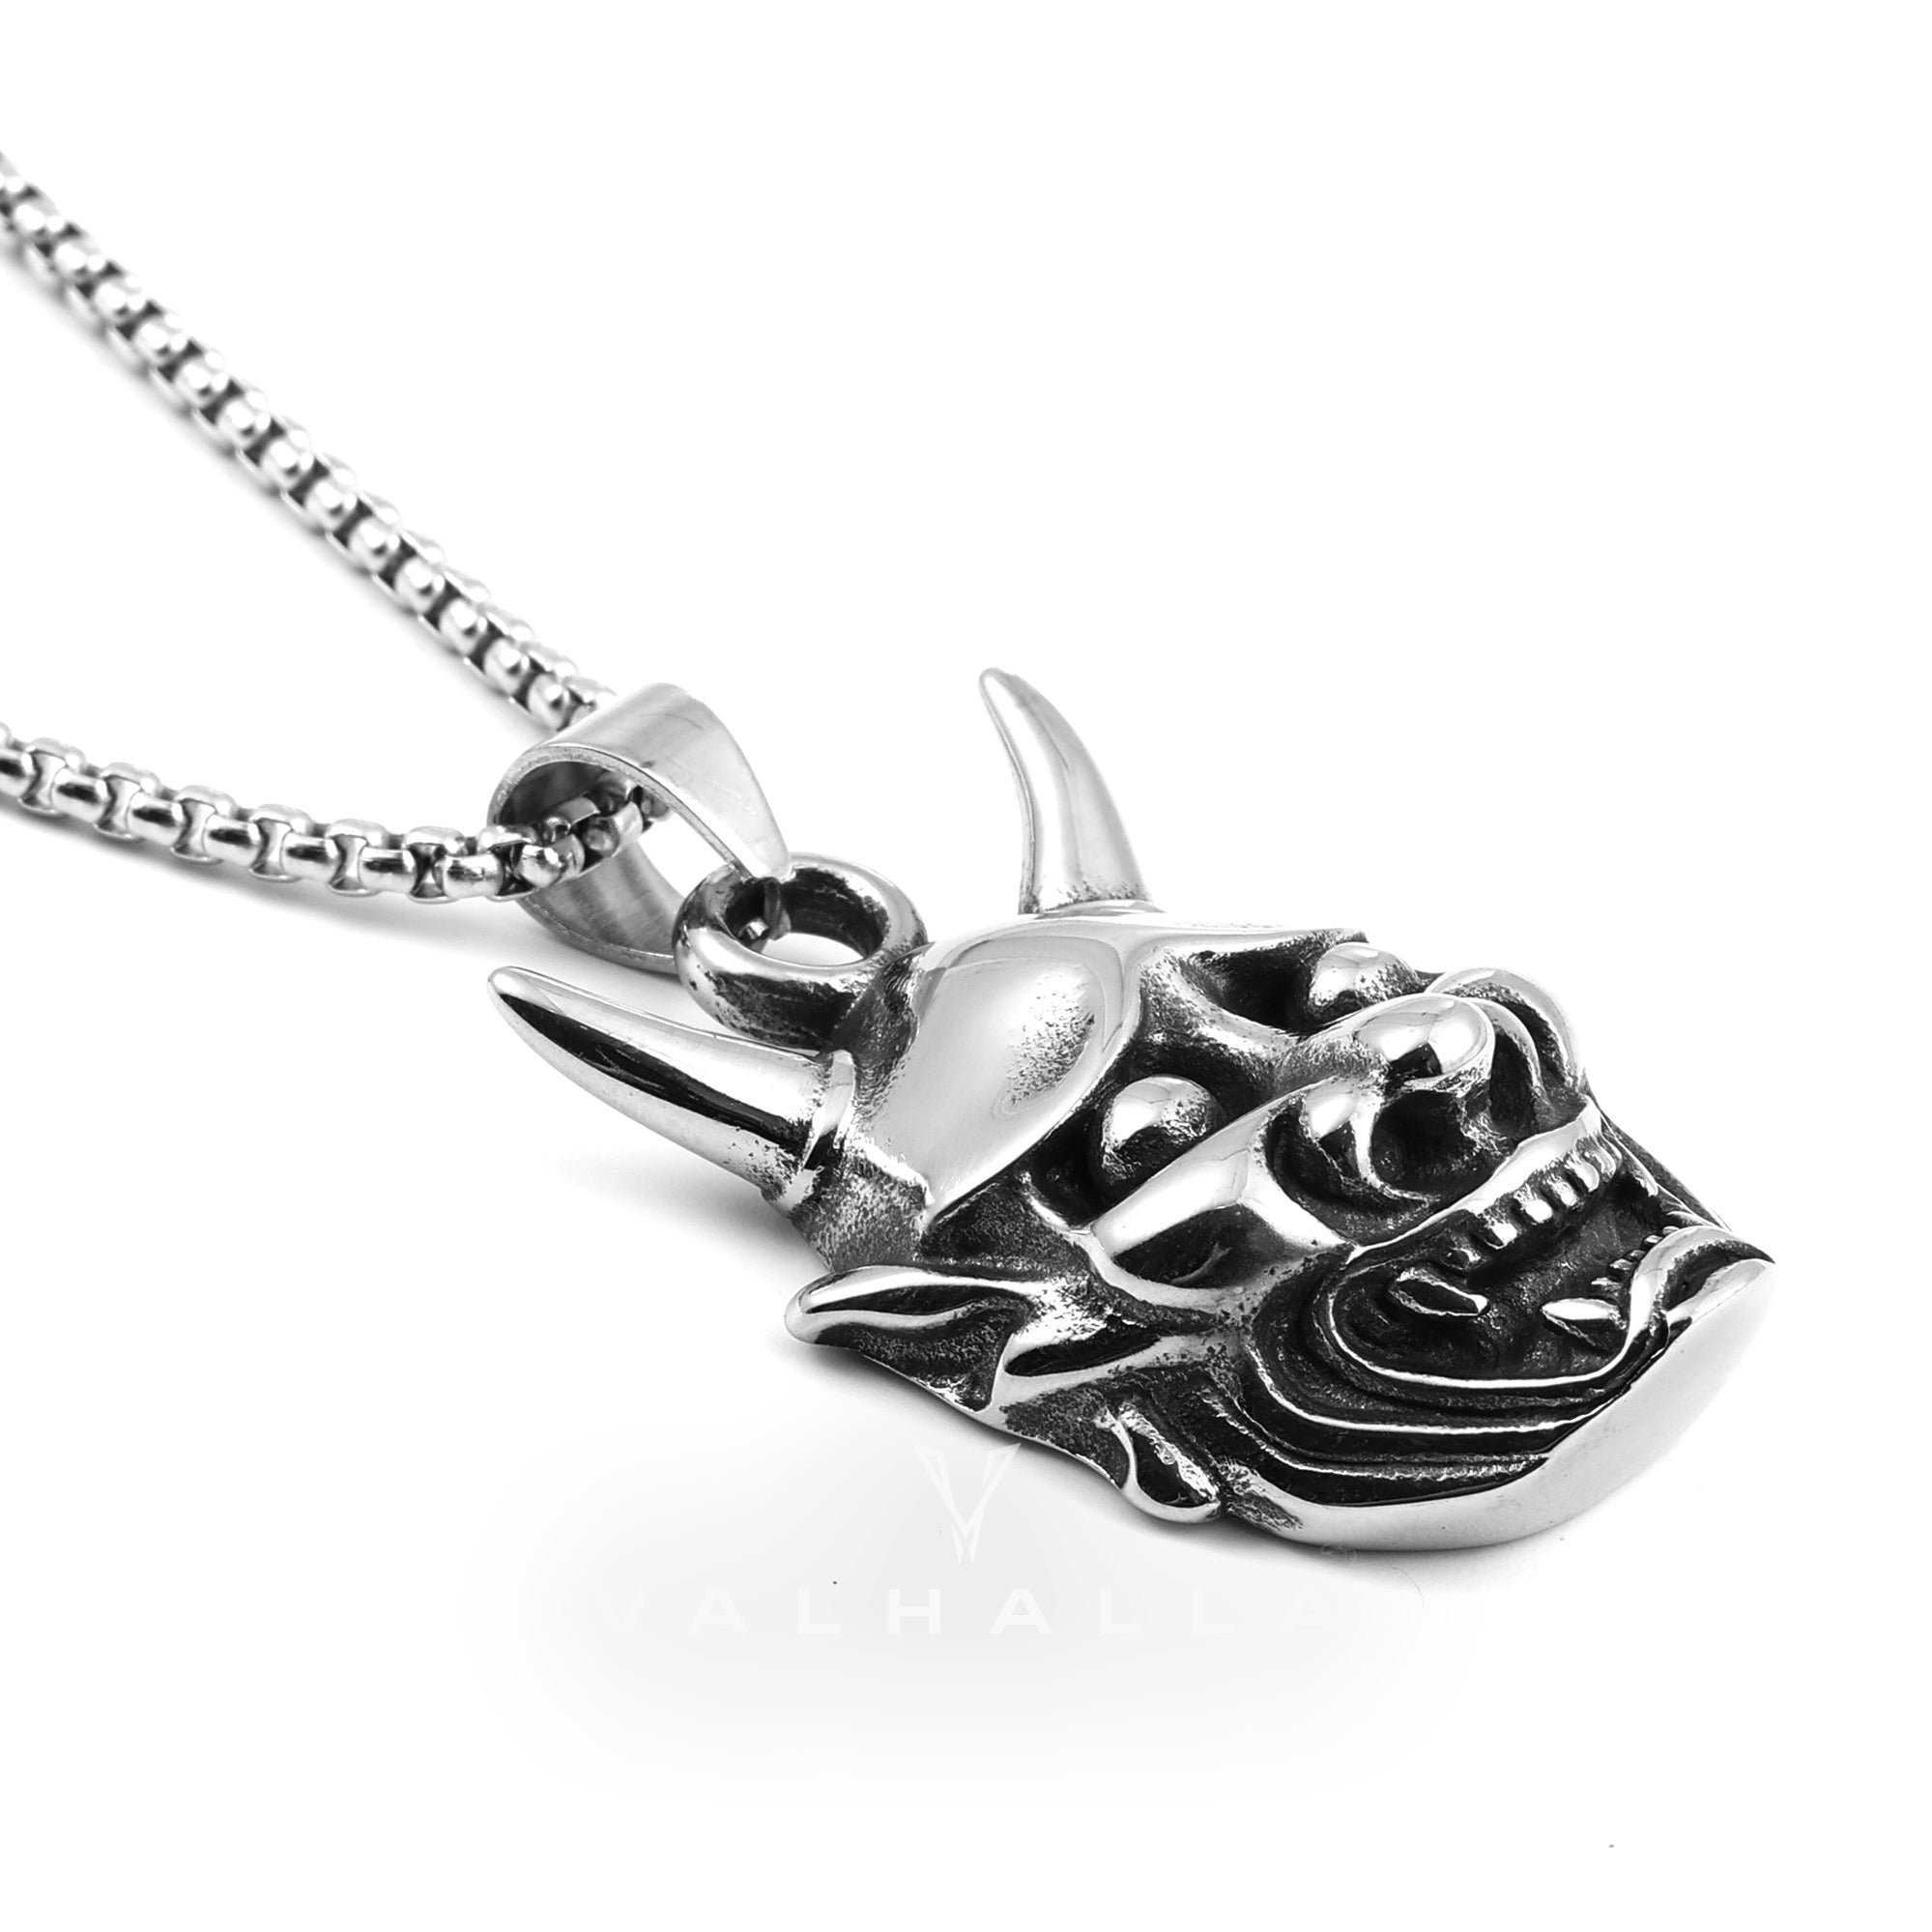 Demon Oni Skull Pendant & Chain Stainless Steel